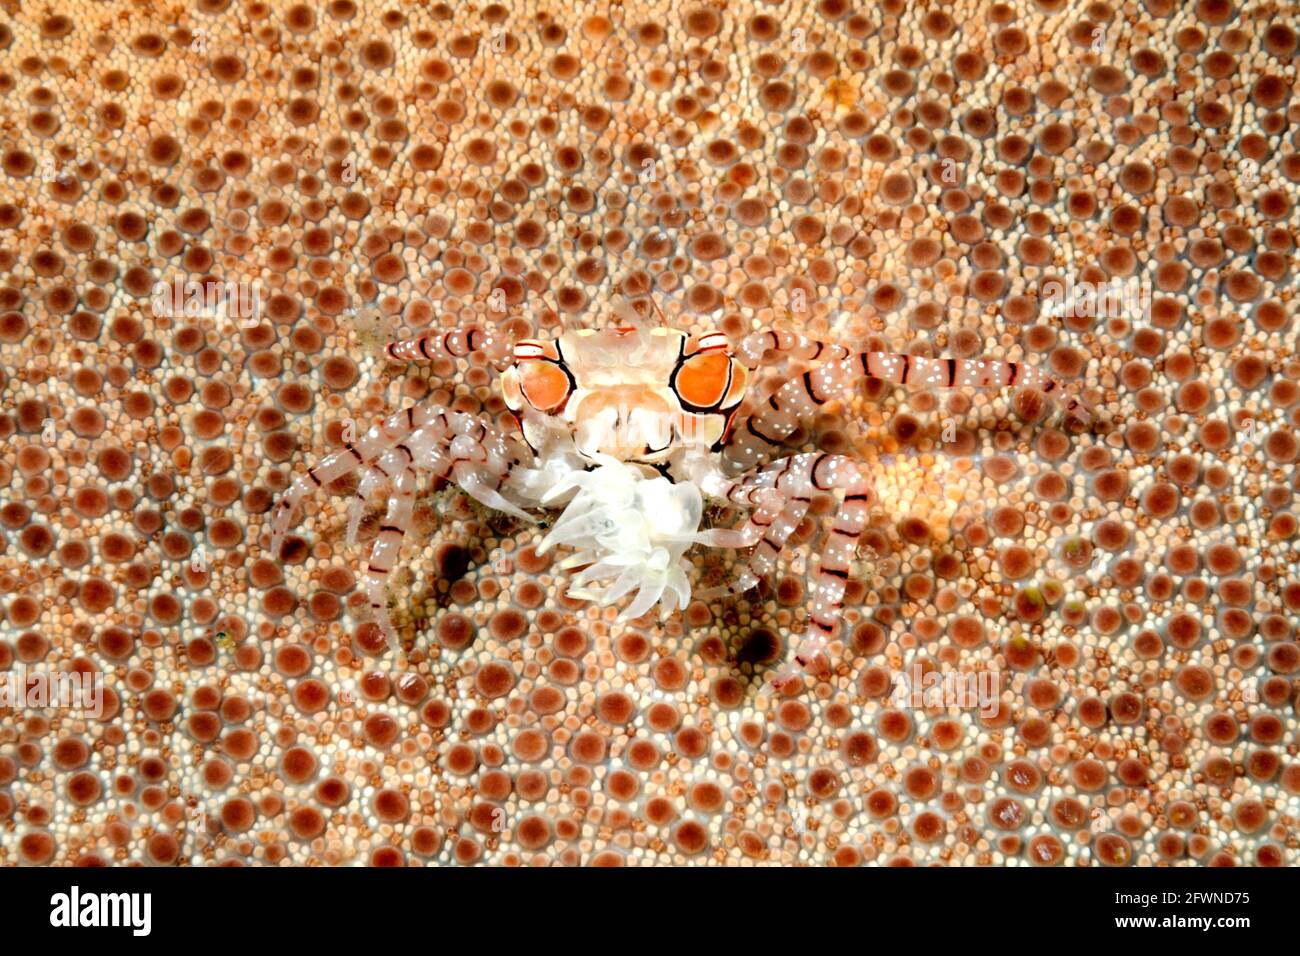 Cangrejo boxeador o Pom Pom Crab, Lybia tessellata camuflada en una estrella de mar y llevando una anémona en su garra. Tulamben, Bali, Indonesia. Bali Sea, Foto de stock